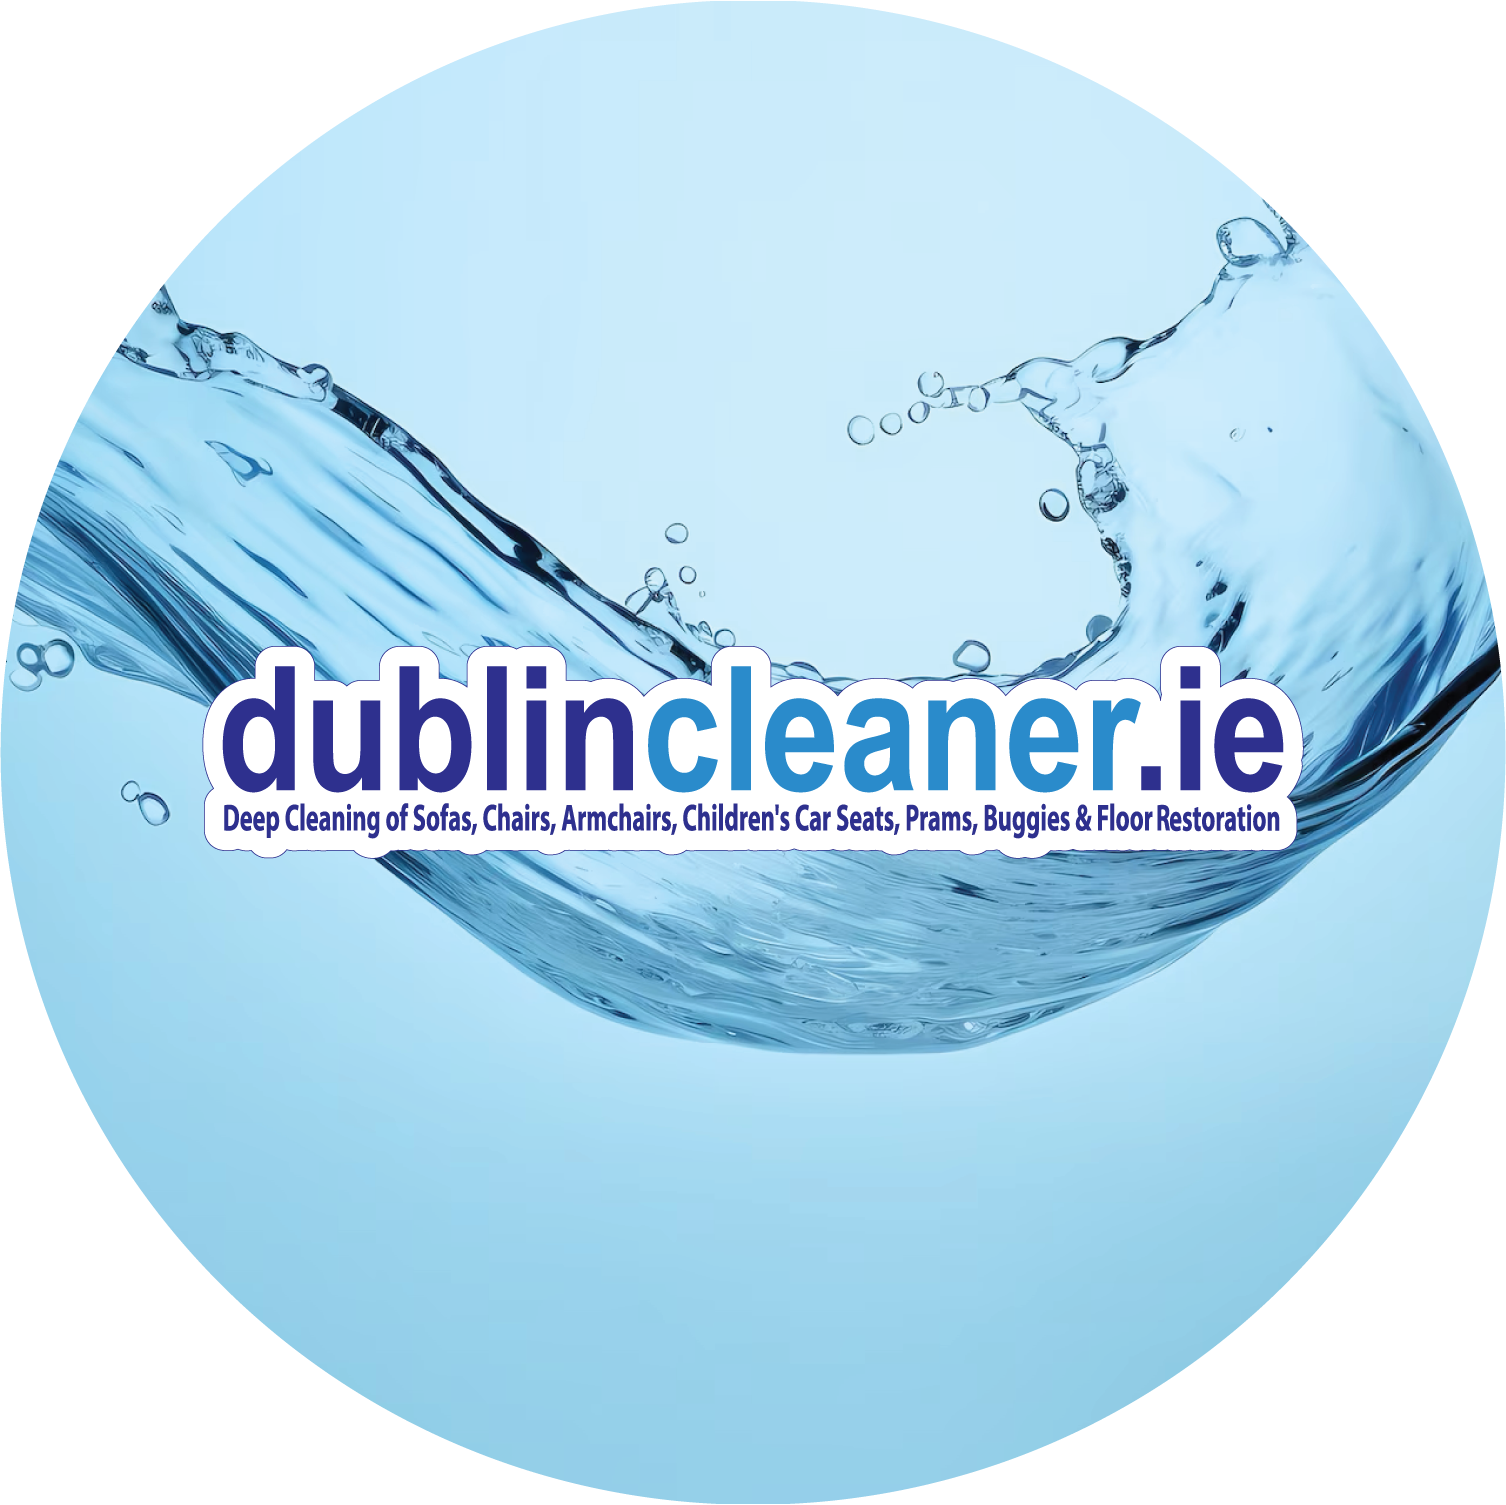 Dublin Cleaner